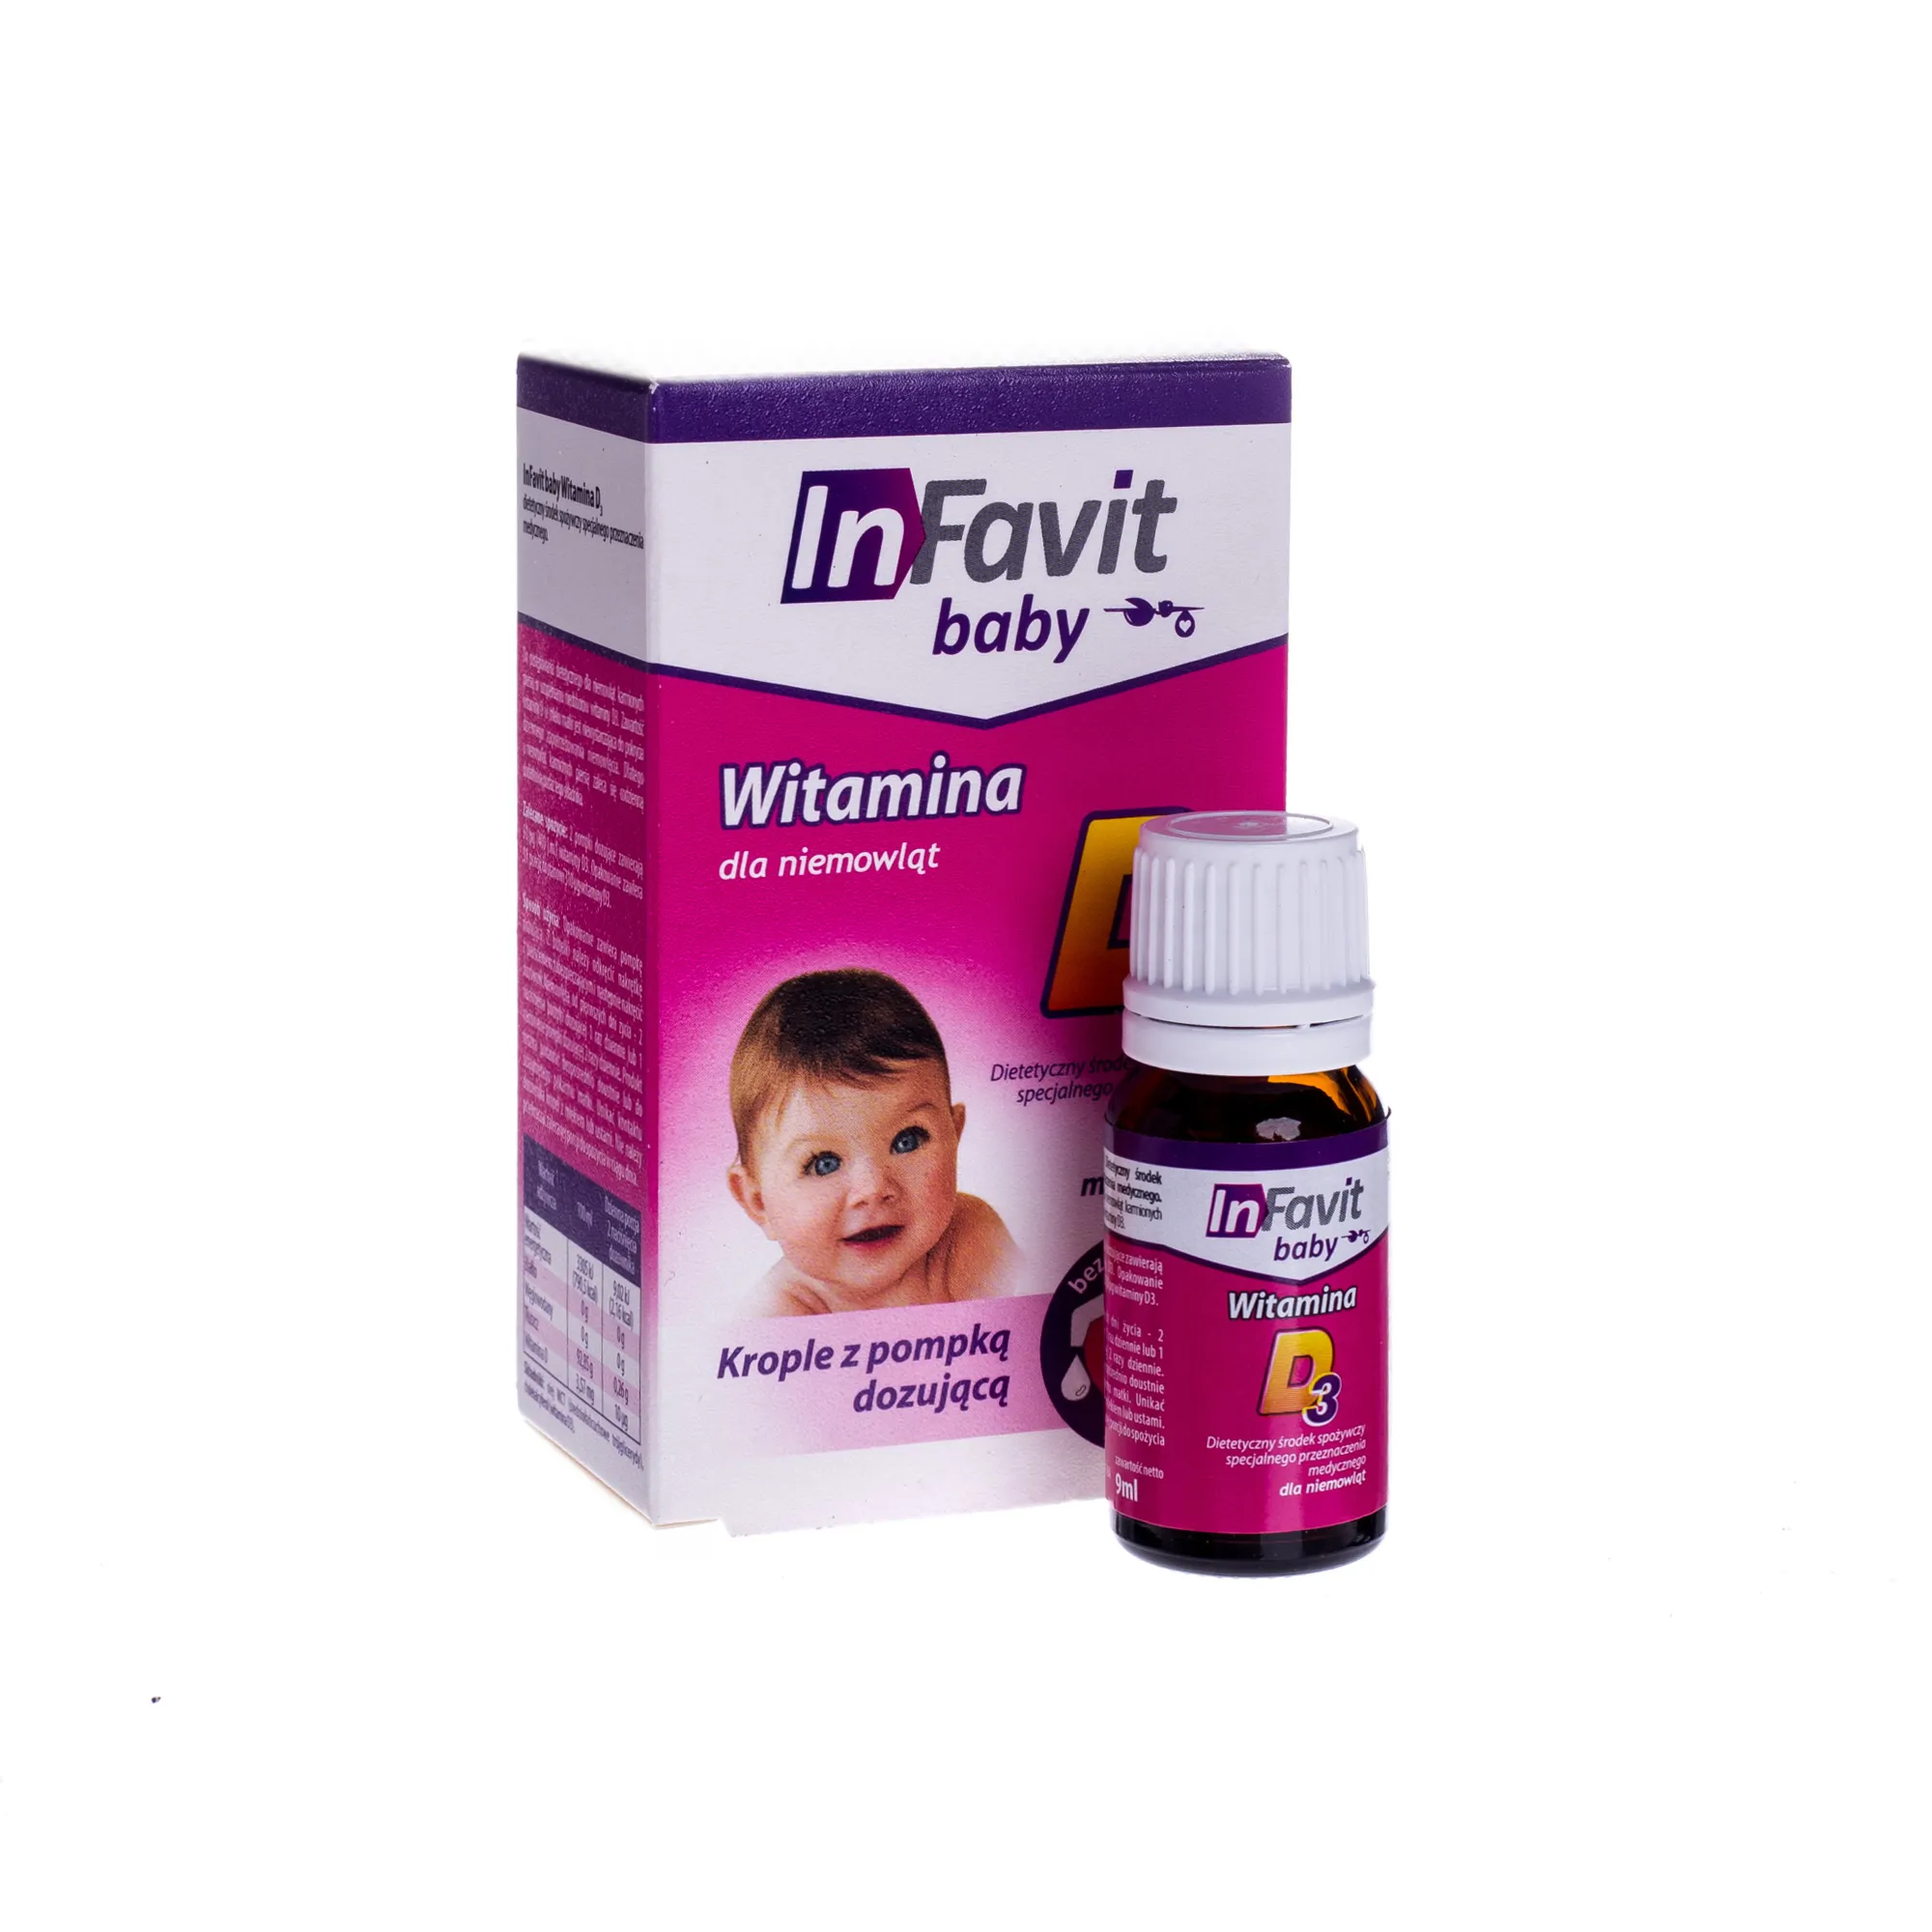 InFavit baby D3, witamina dla niemowląt, 9 ml